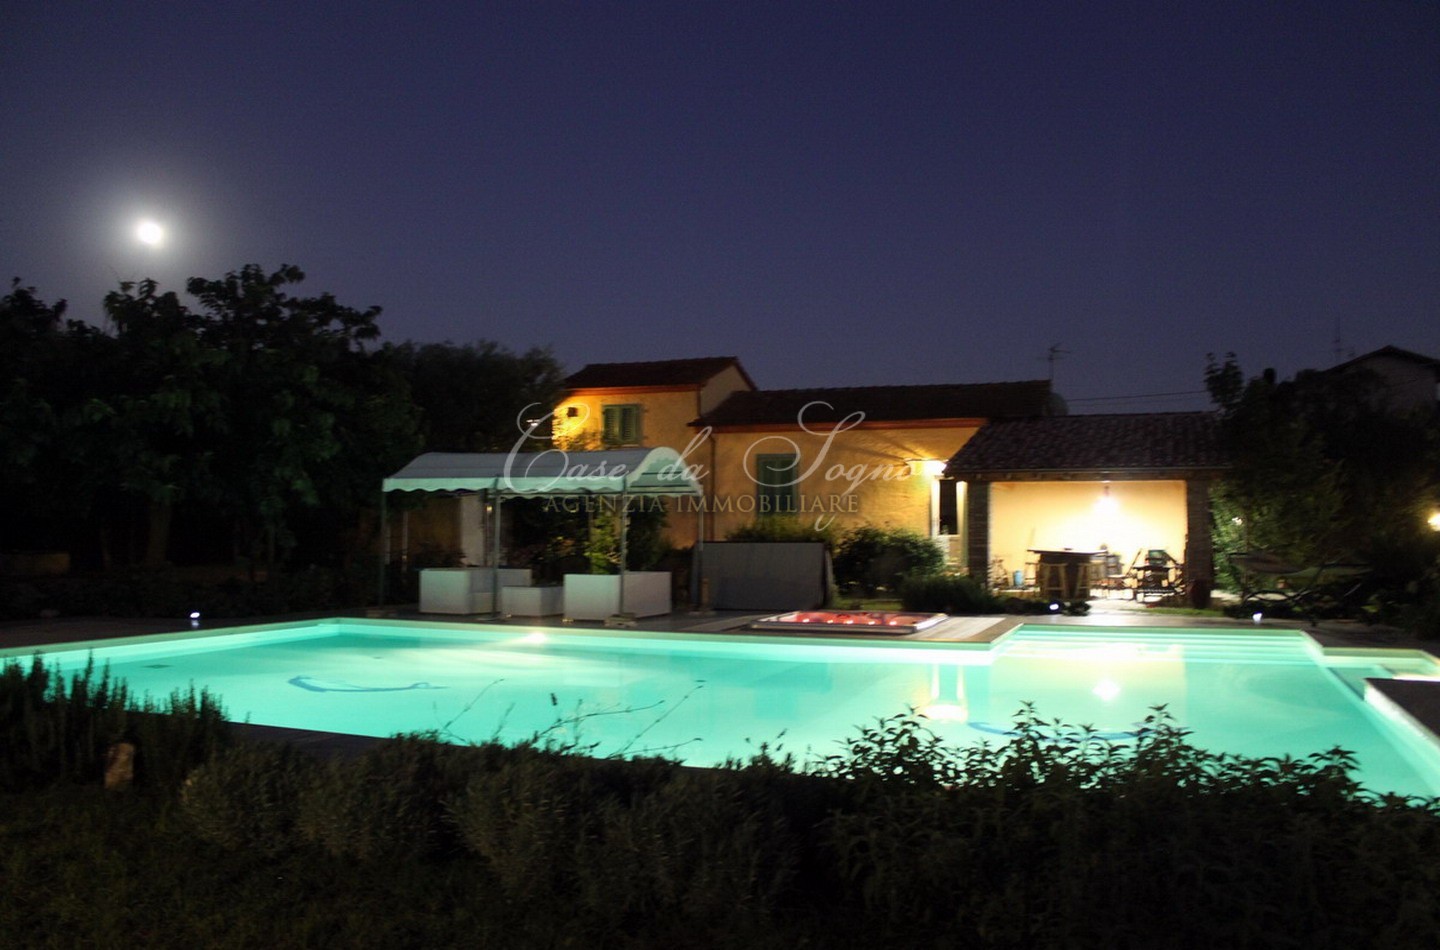 363 - cover Villa tuscany